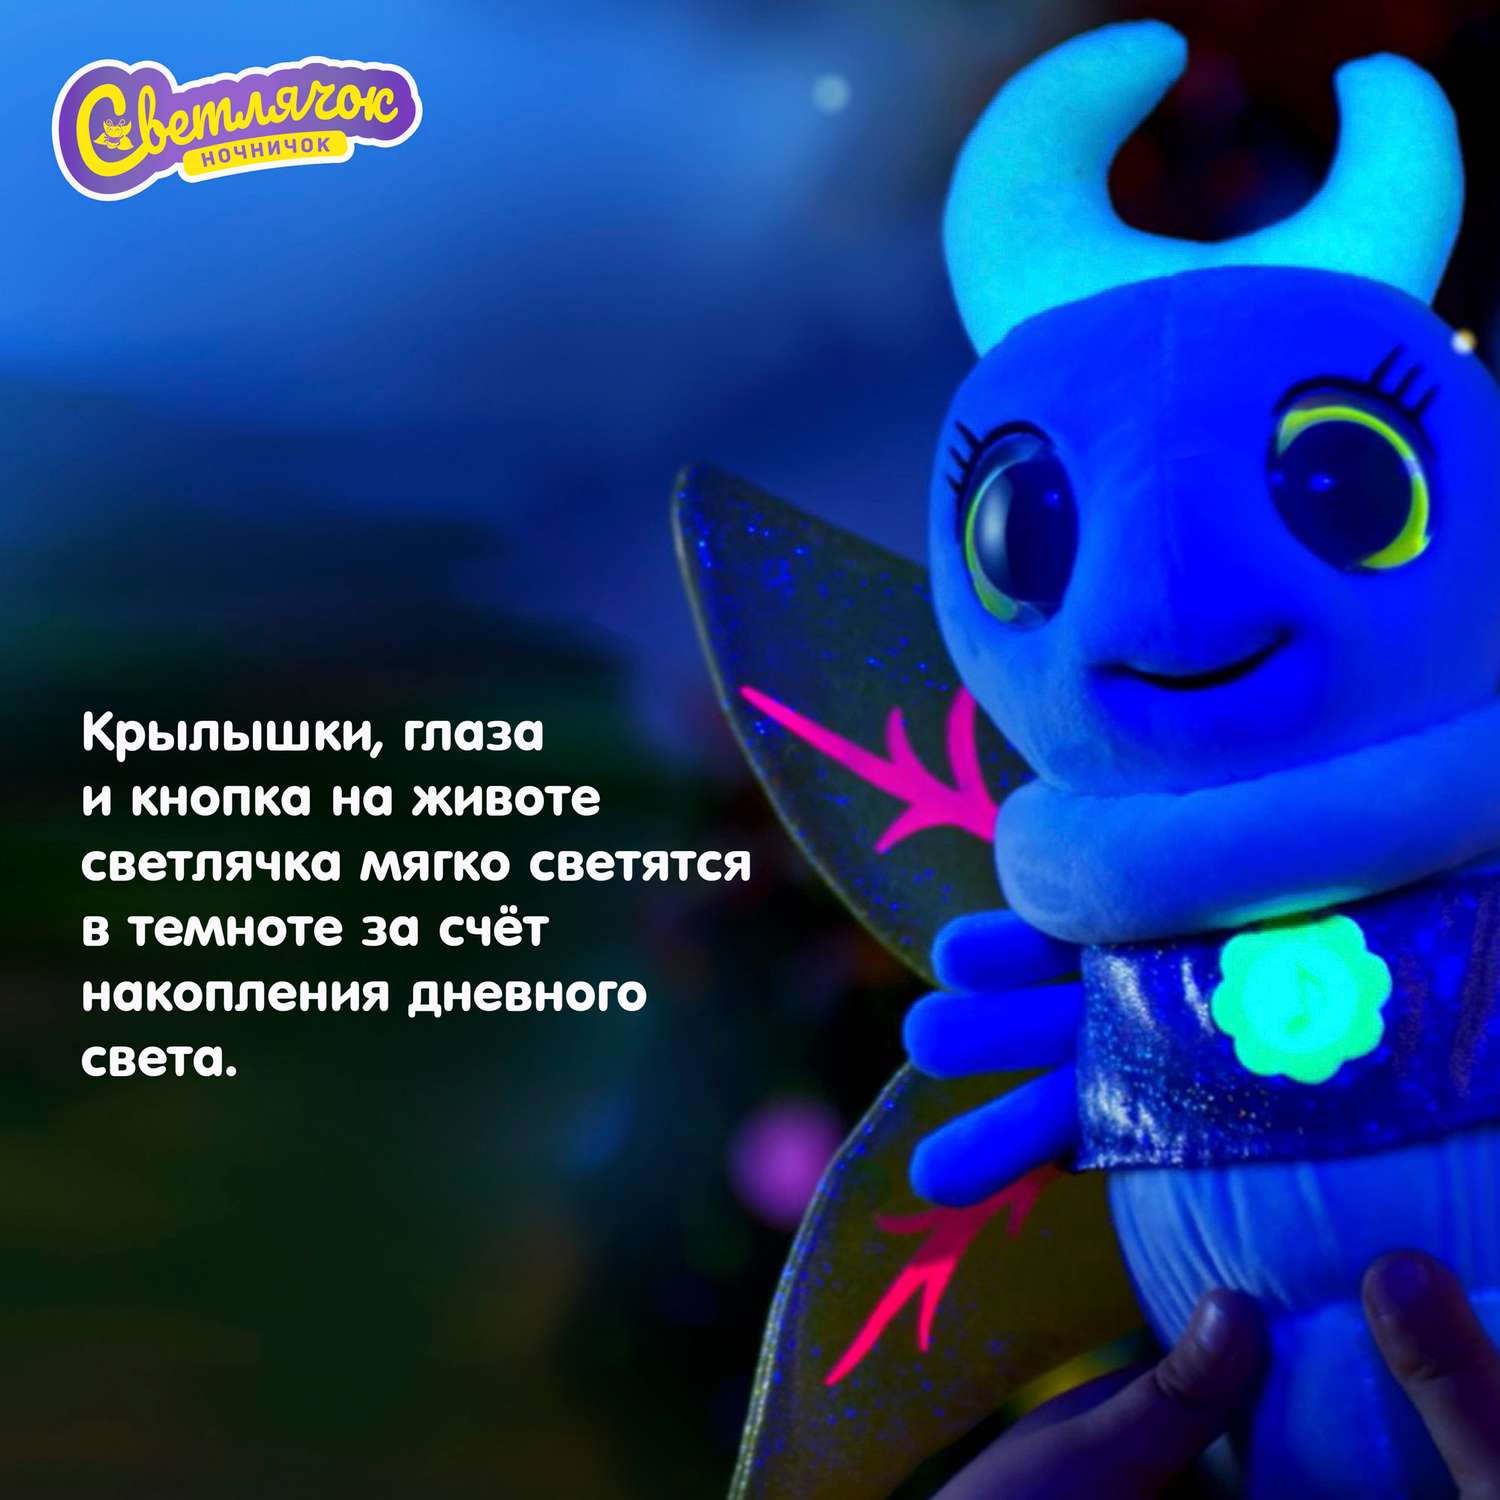 Игрушка интерактивная Светлячок ночничок музыкальная мягкая цвет голубой - фото 9